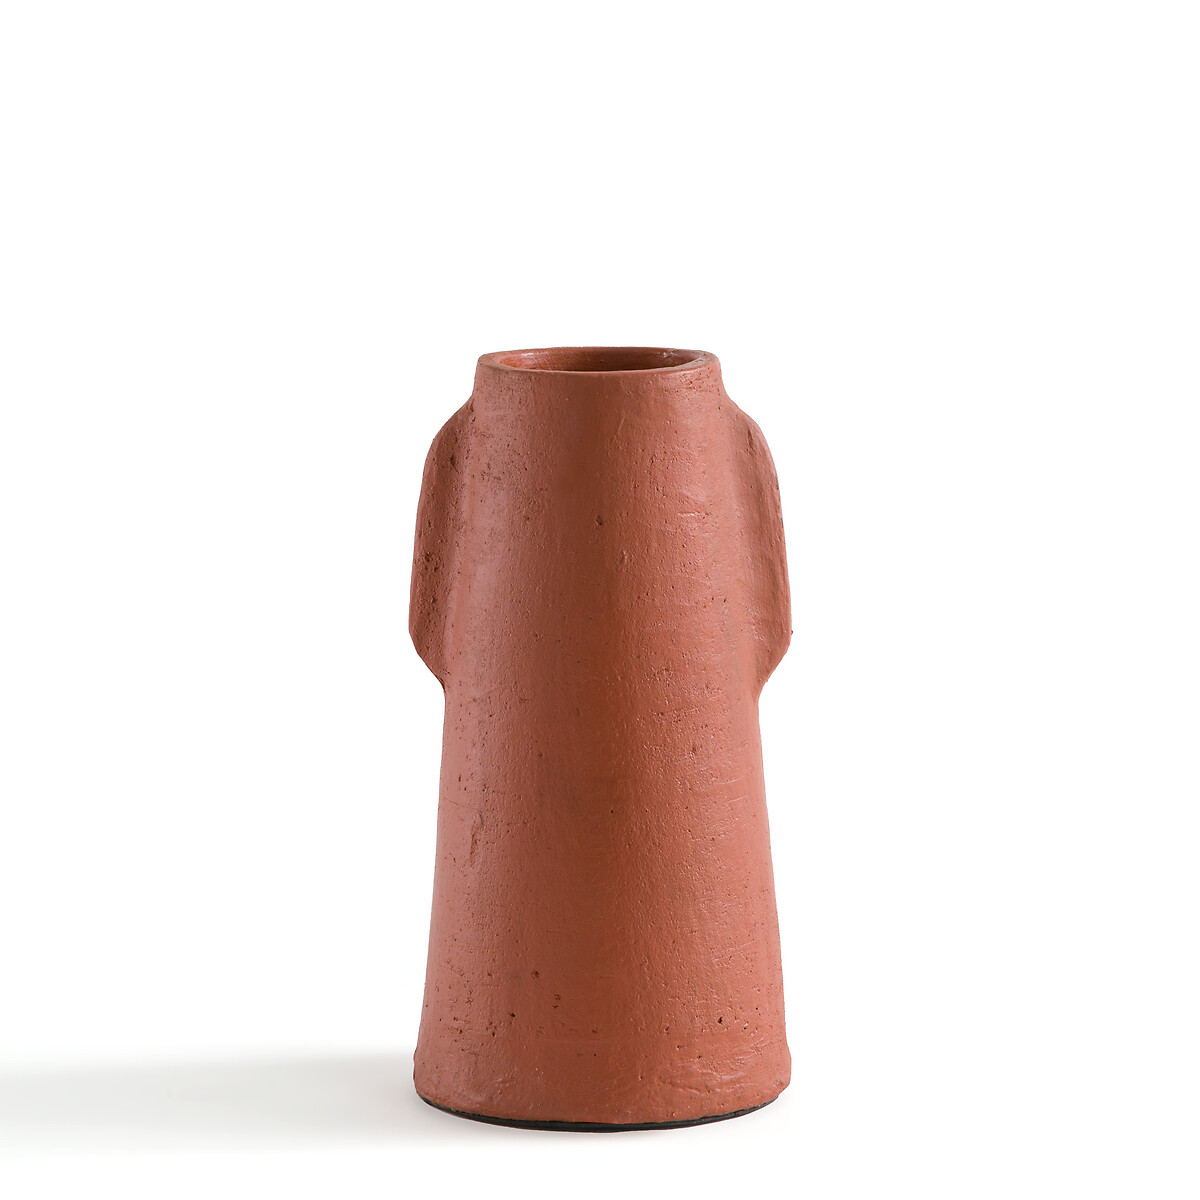 ваза из керамики рифленая в26 см liso единый размер серый Ваза из керамики В31 см Sira единый размер каштановый